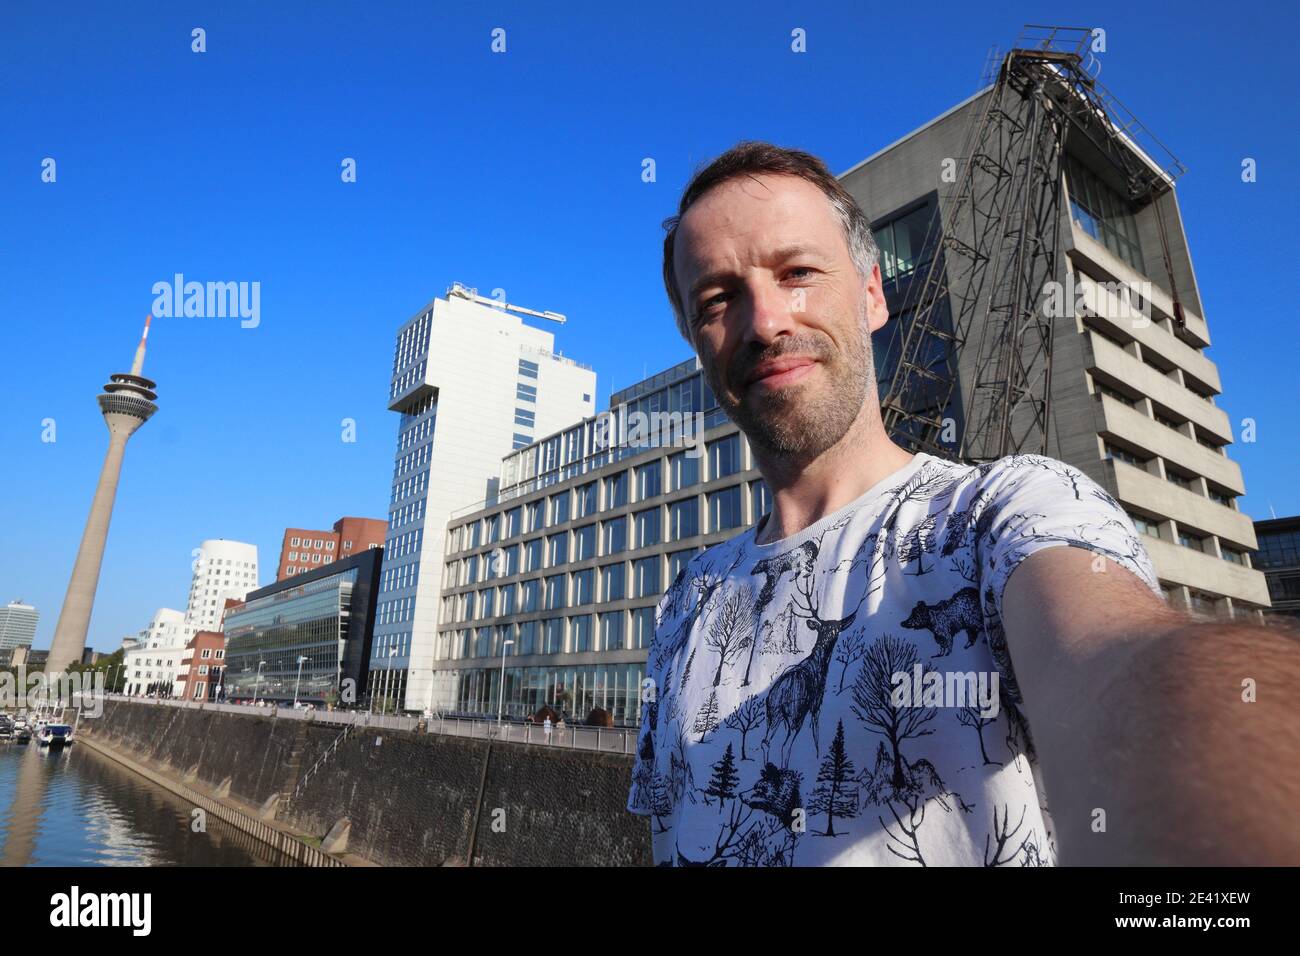 Selfie touristique à Düsseldorf, Allemagne. Selfie voyageur avec l'horizon moderne de Dusseldorf Hafen. Banque D'Images